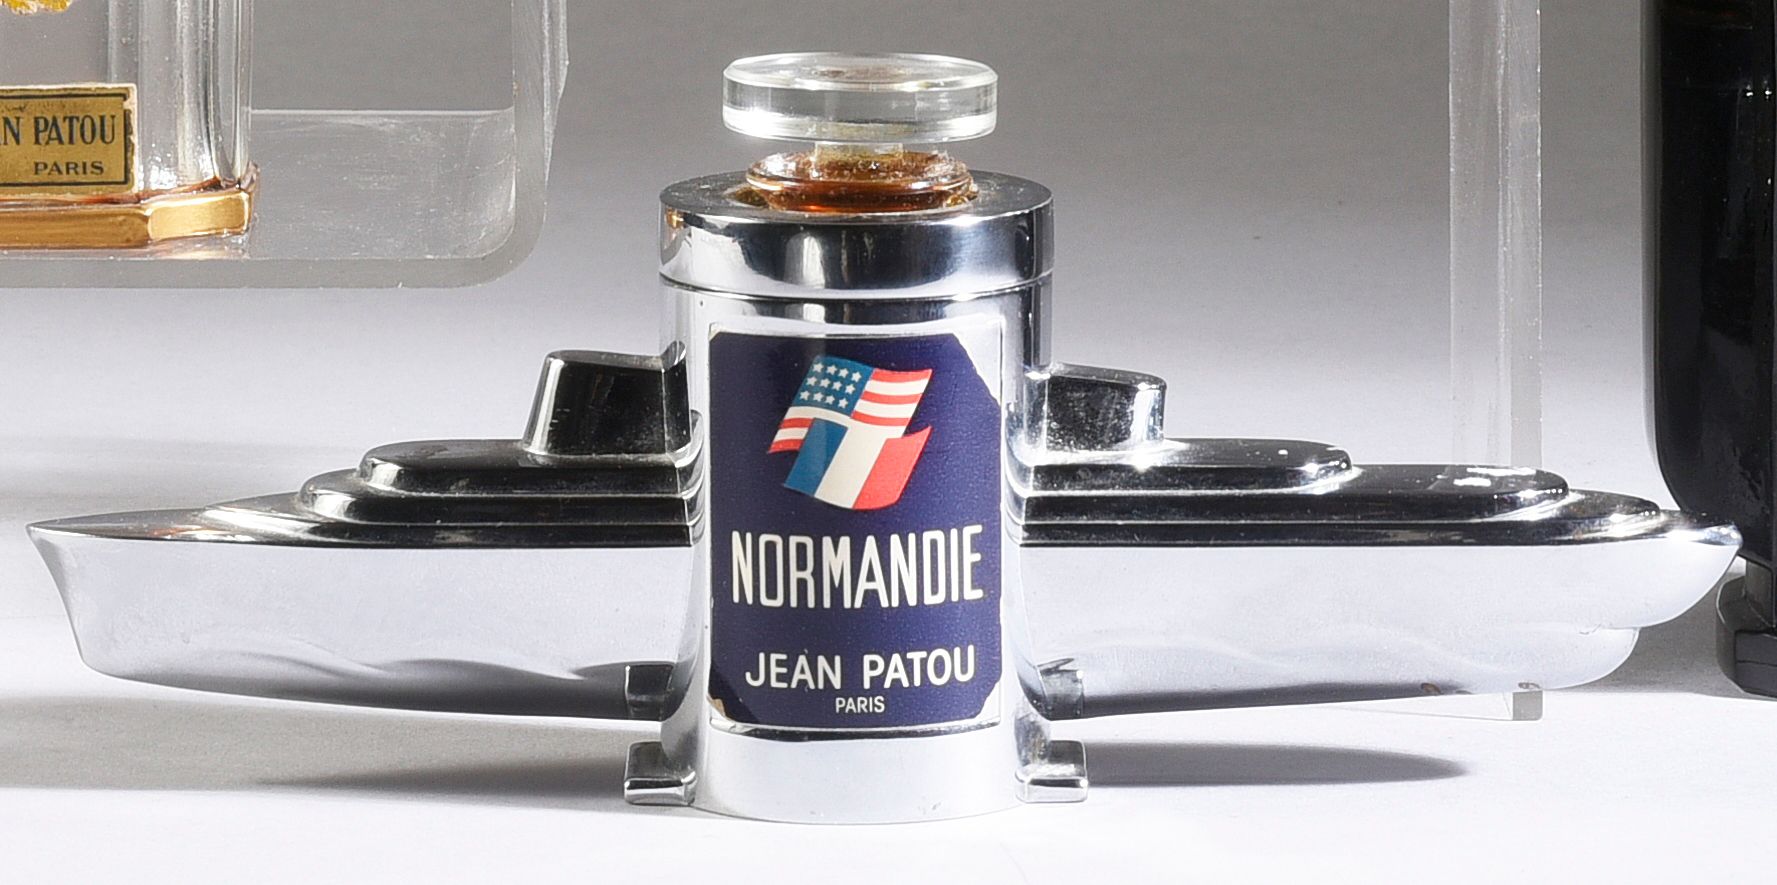 JEAN PATOU - «Normandie» - (1935) 
Flacon en verre incolore pressé moulé et méta&hellip;